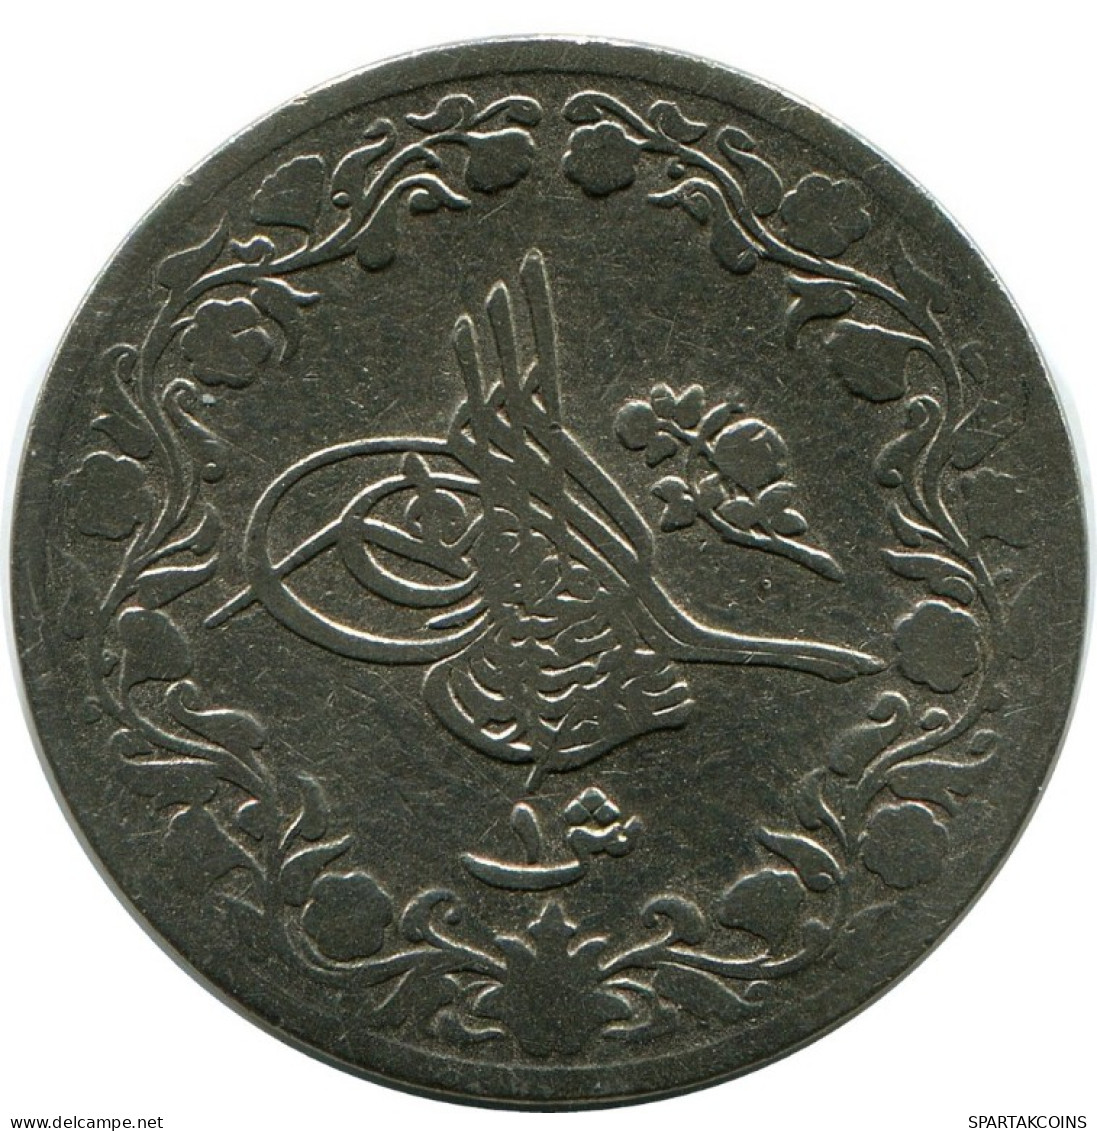 1 QIRSH 1899 EGYPT Islamic Coin #AH276.10.U.A - Egitto